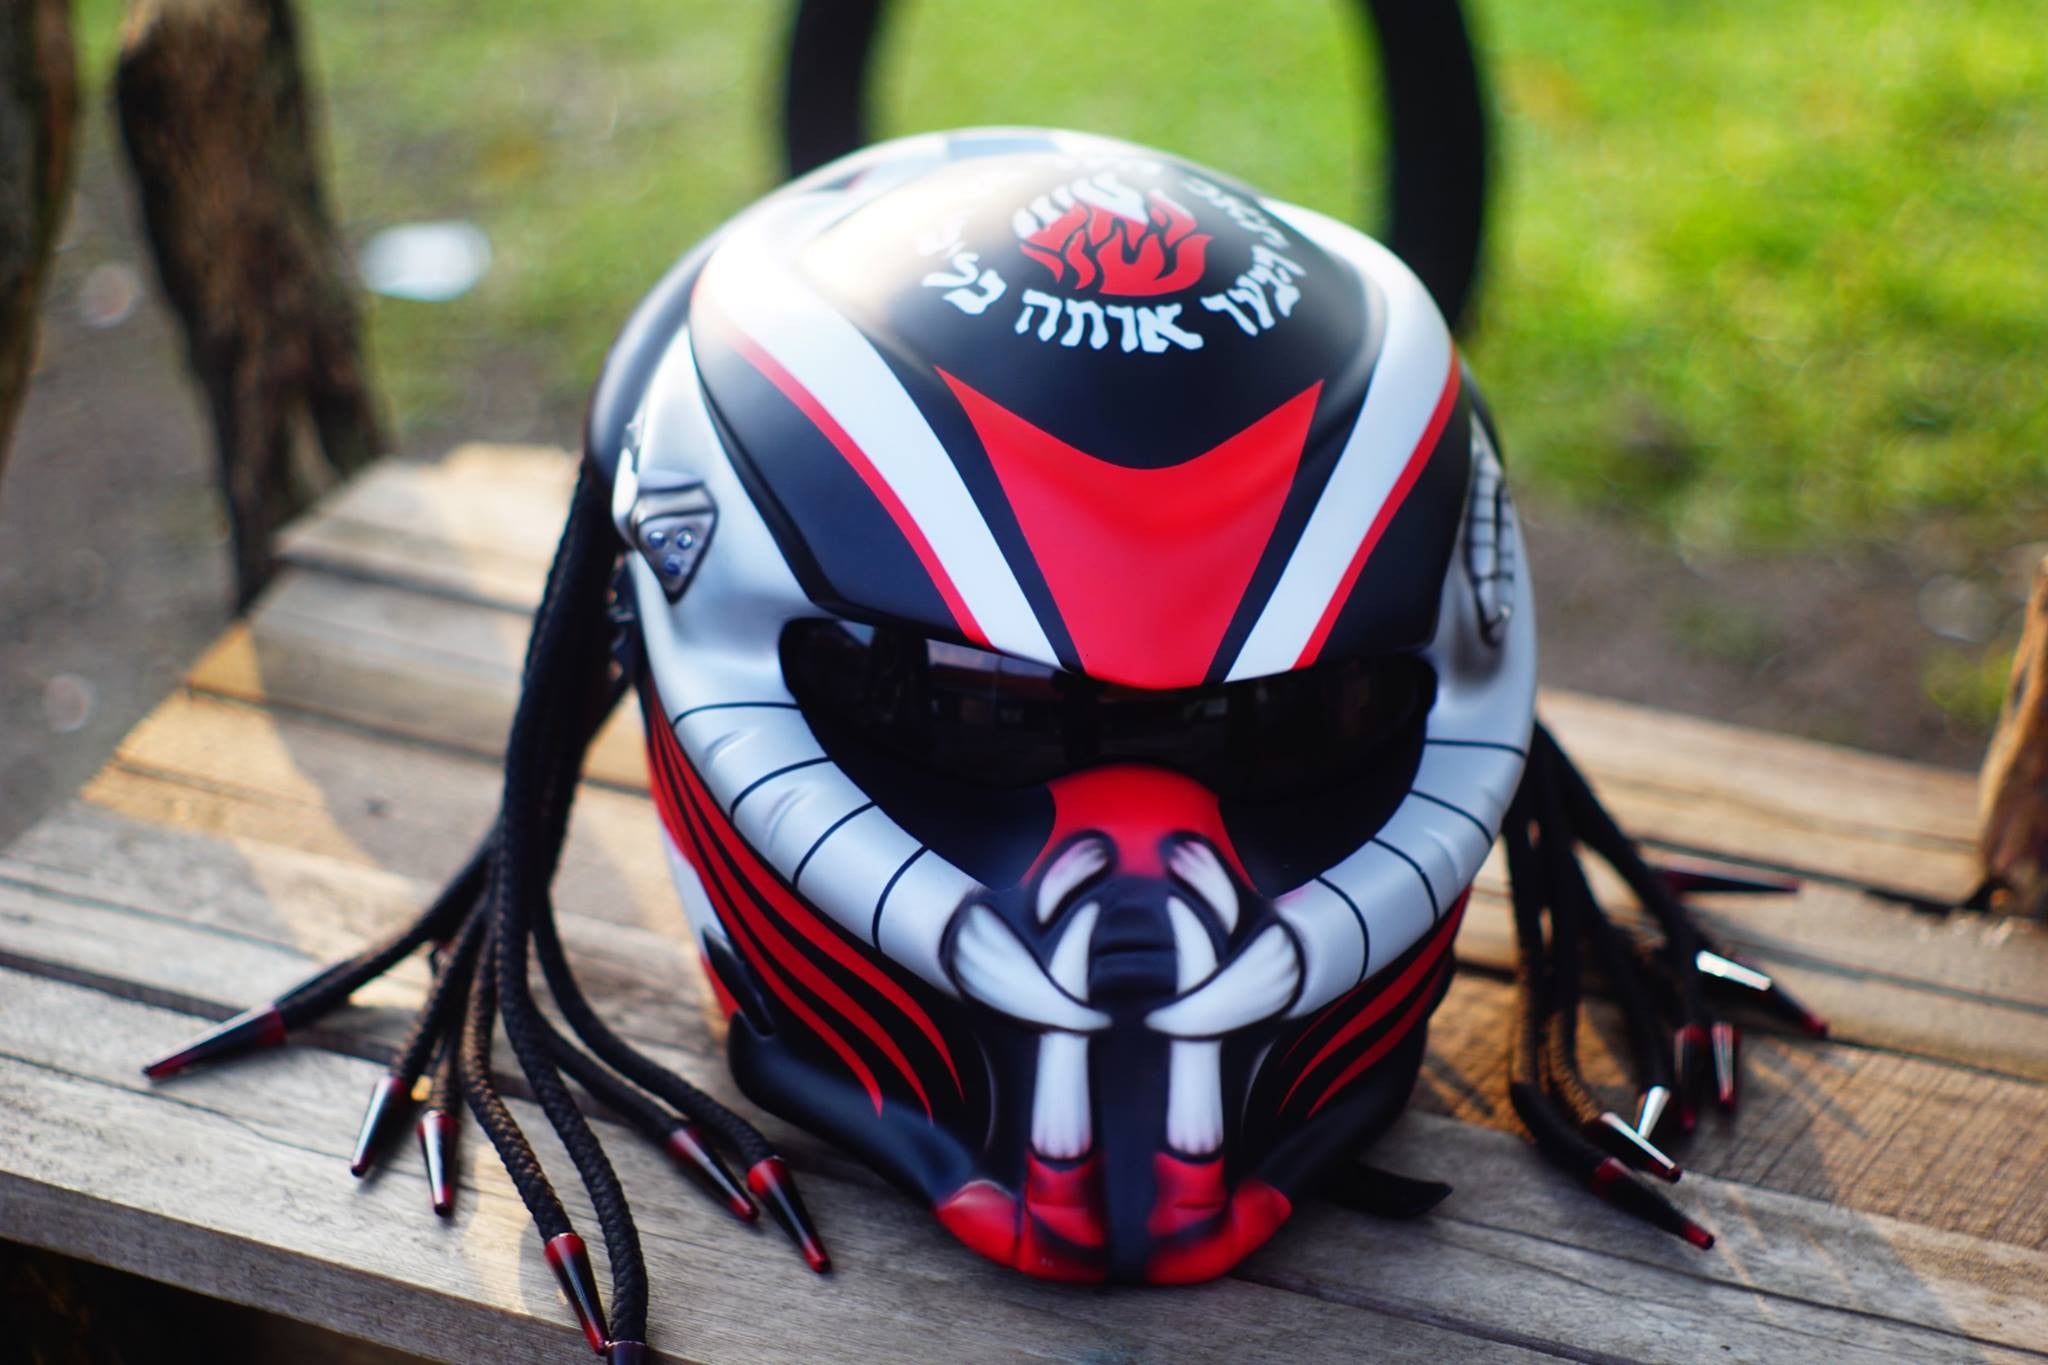 Predator Motorcycle Helmet With Dreads